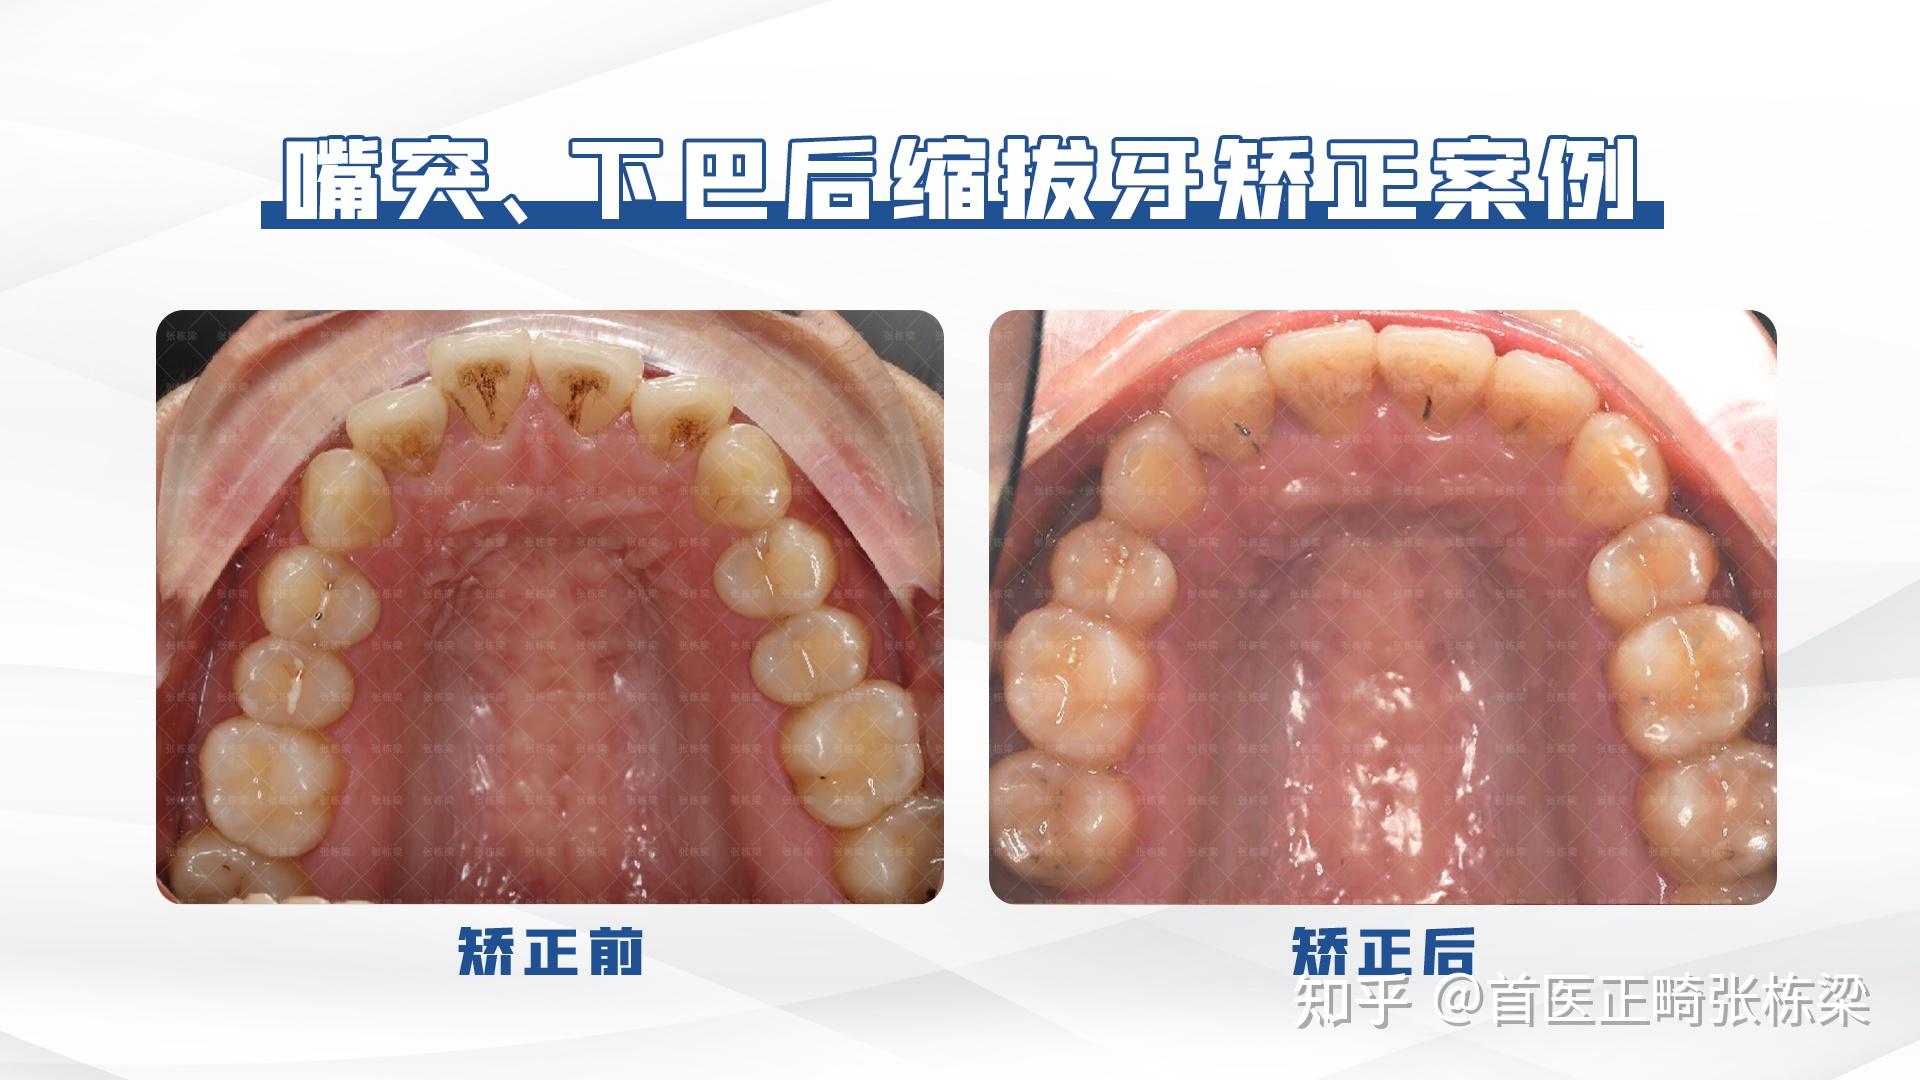 双颌前突拔牙病例-无托槽隐形矫治技术拔牙病例-医学